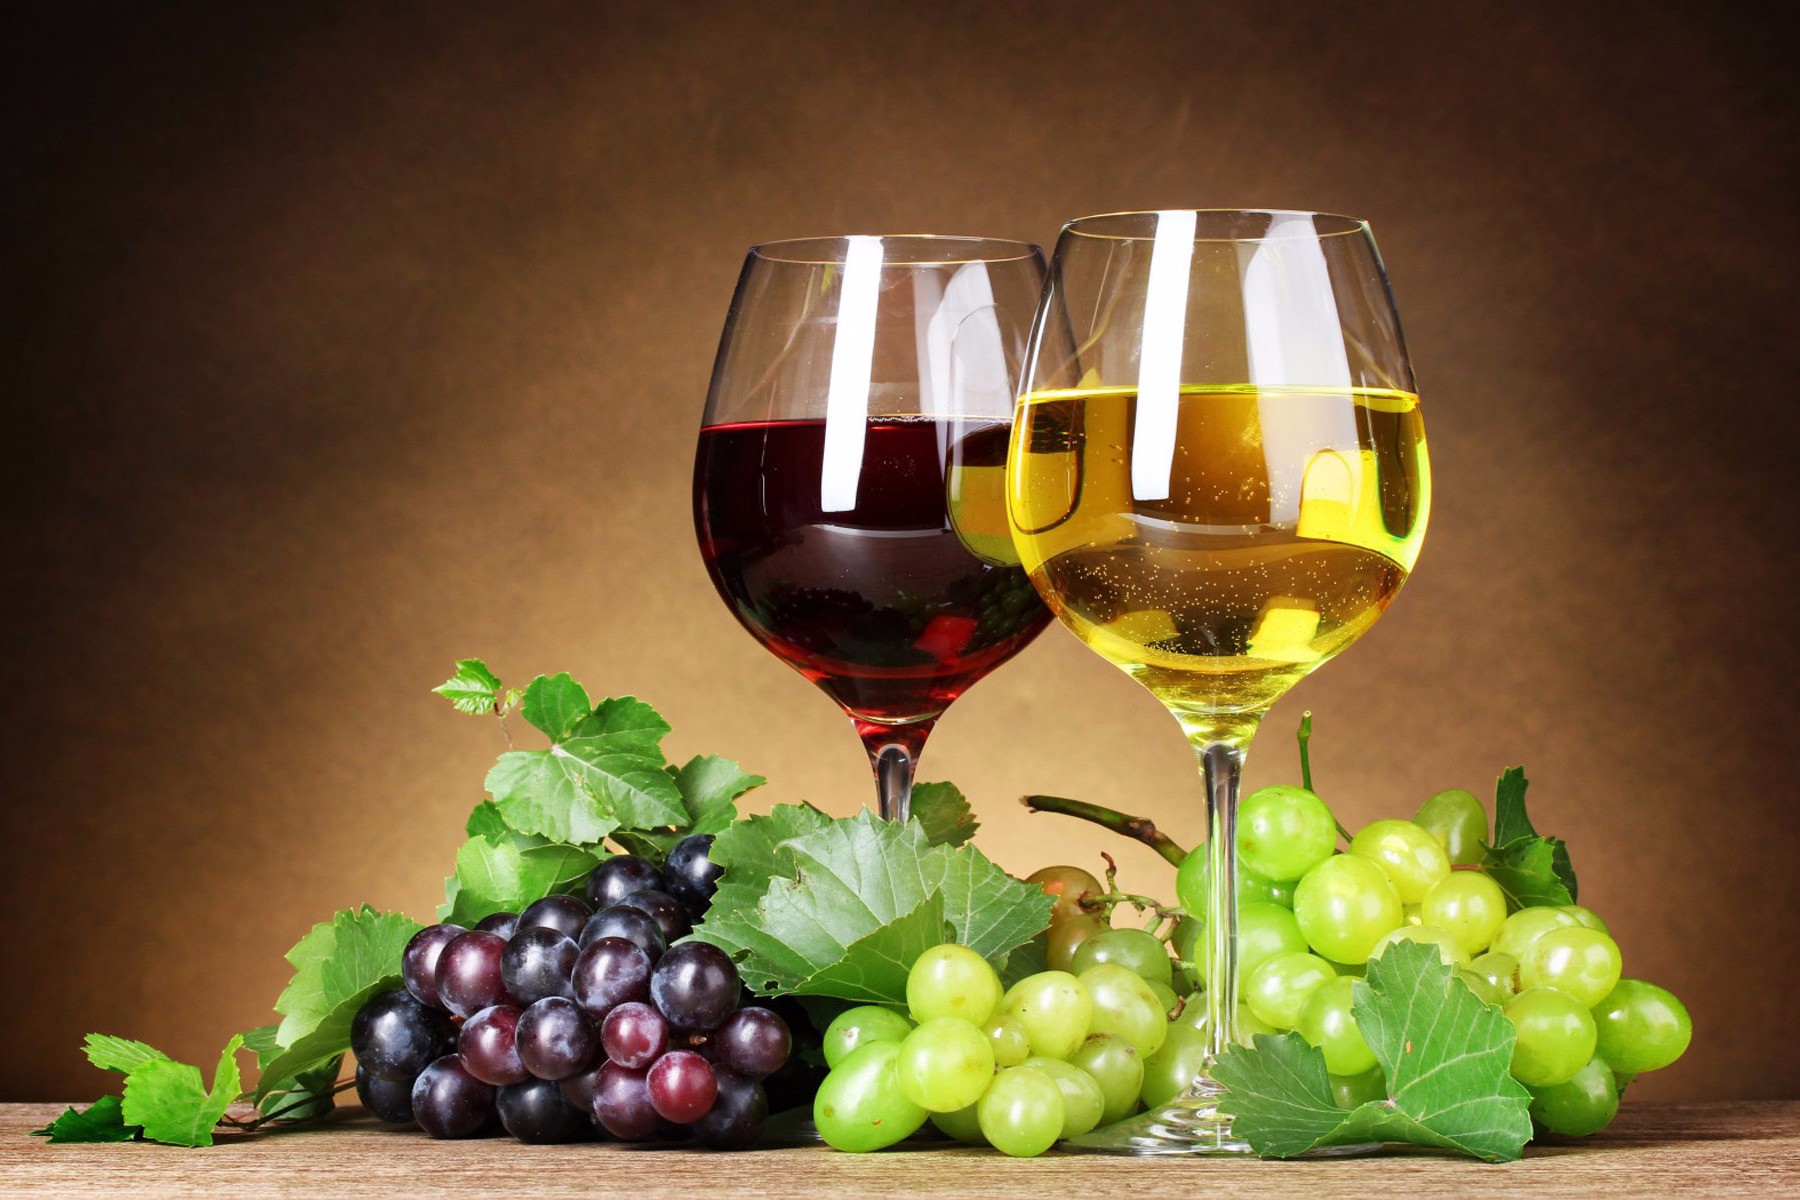 Առաջիկա 5 տարիներին հայկական գինիների նպատակային արտահանման շուկաները կլինեն Ռուսաստանը, Լեհաստանը, Բելգիան և ԱՄՆ